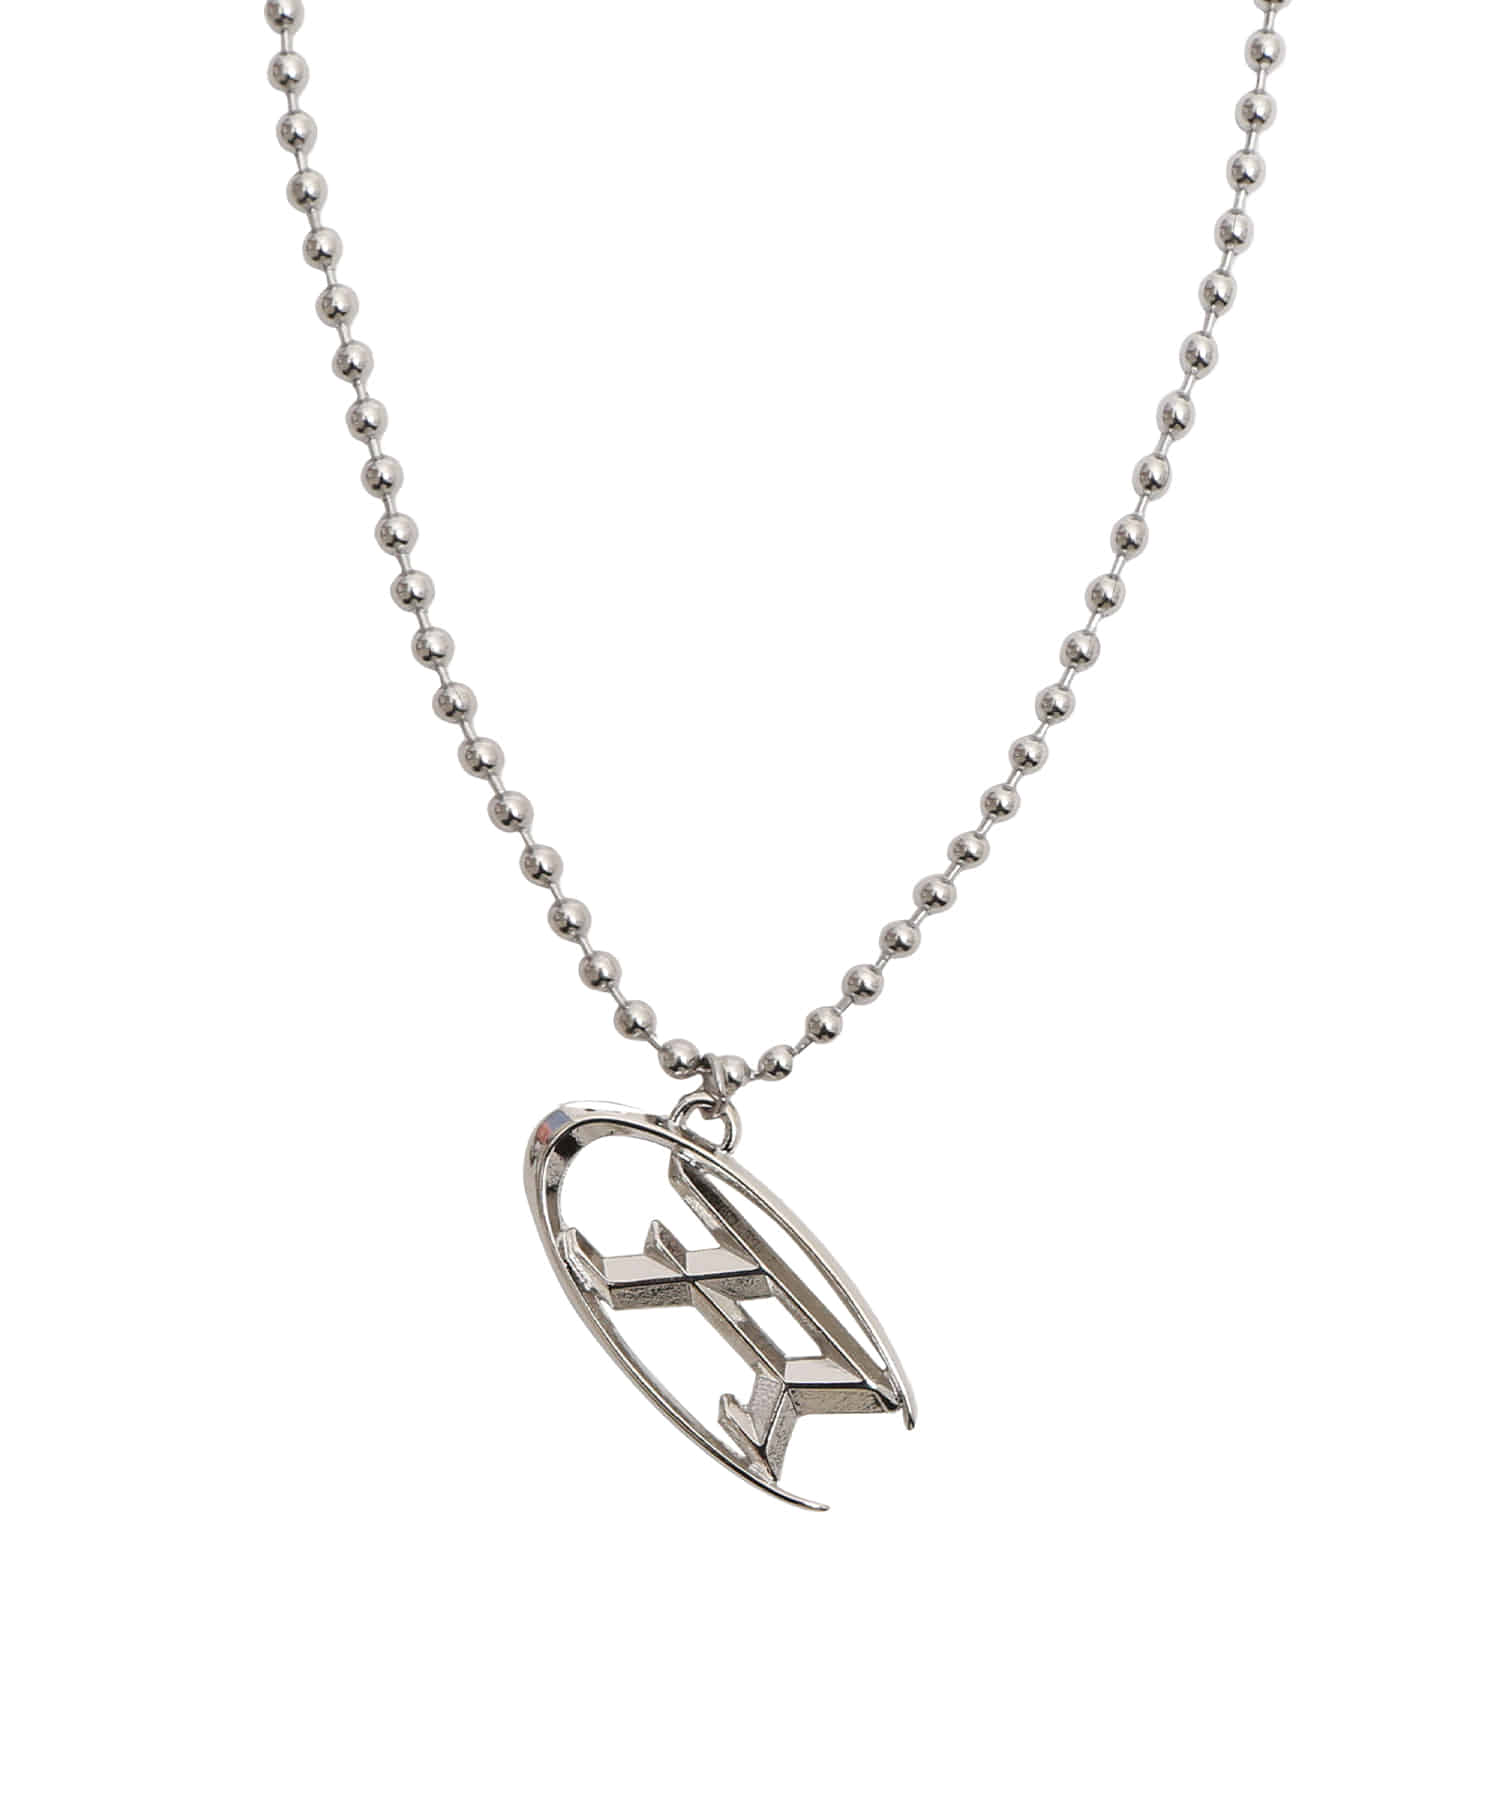 Half Moon Necklace - Silver